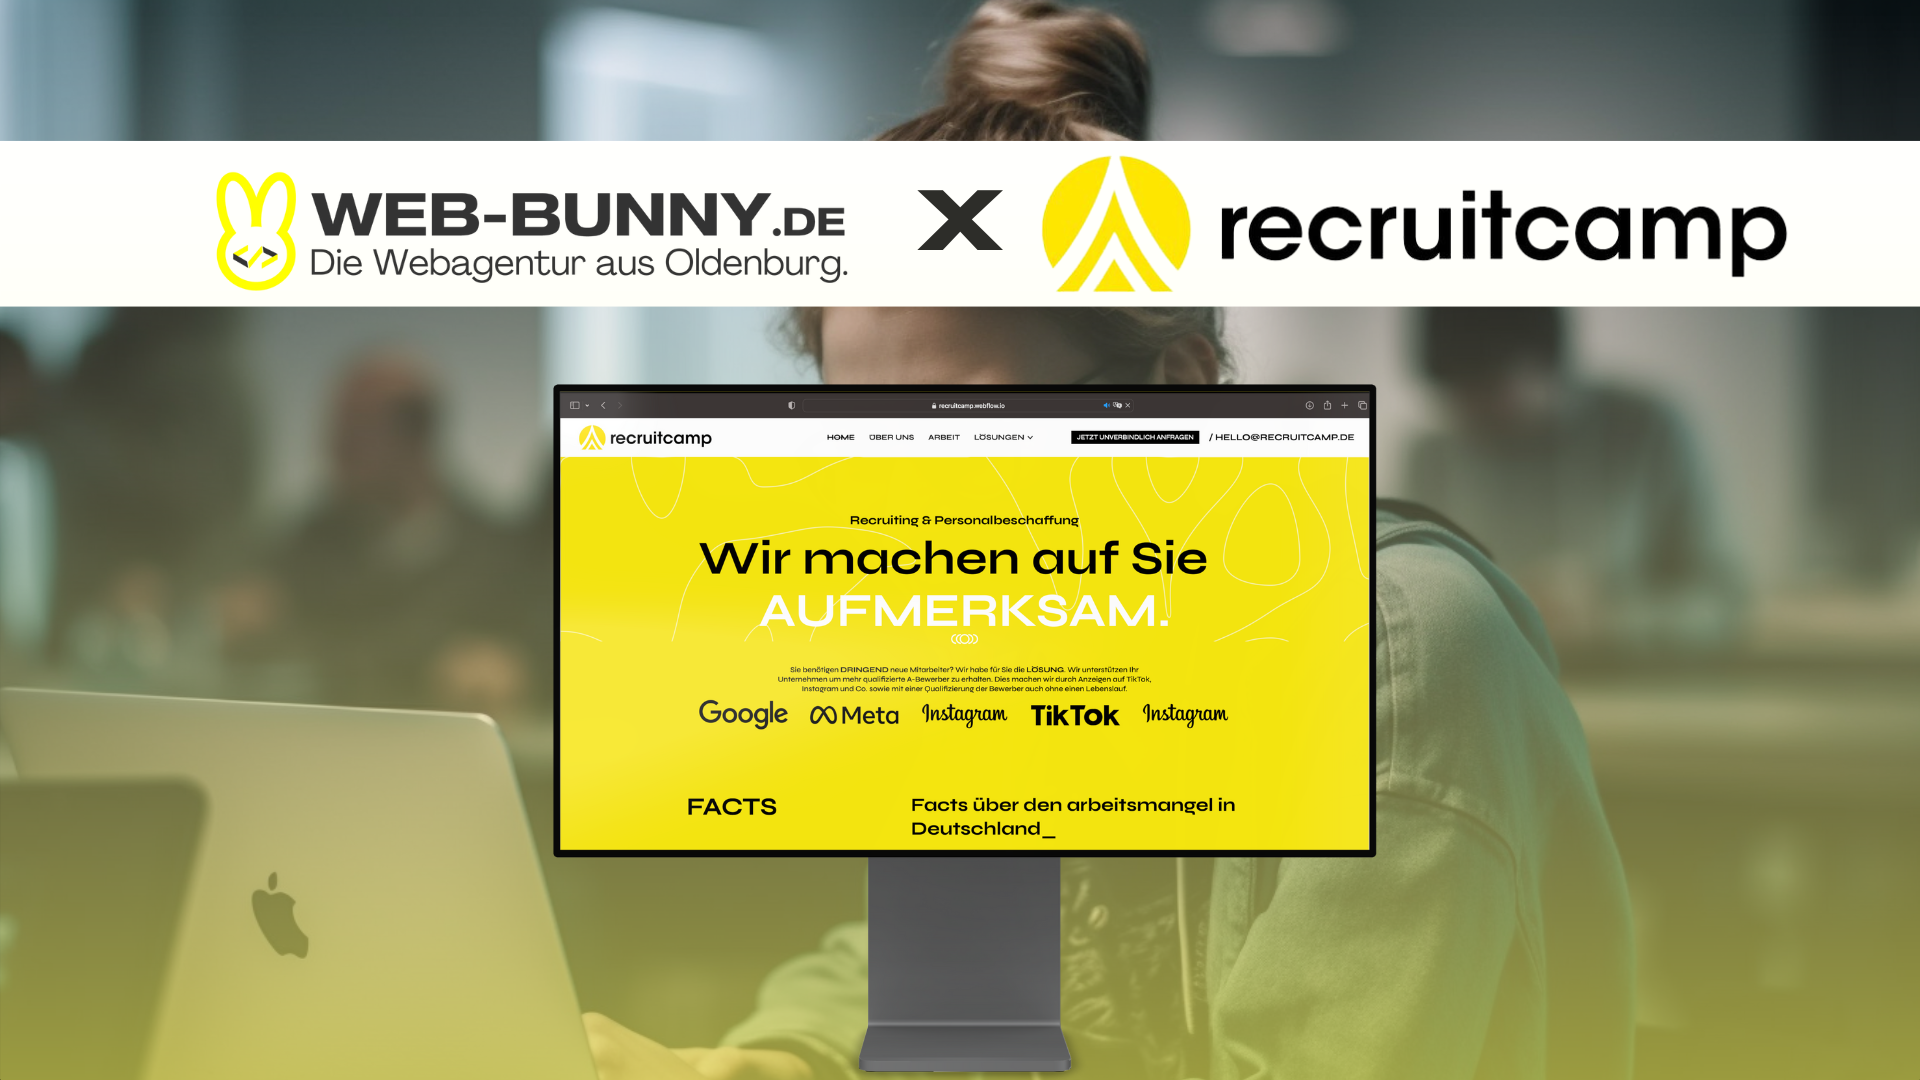 WEBBUNNY - Die Webagentur aus Oldenburg